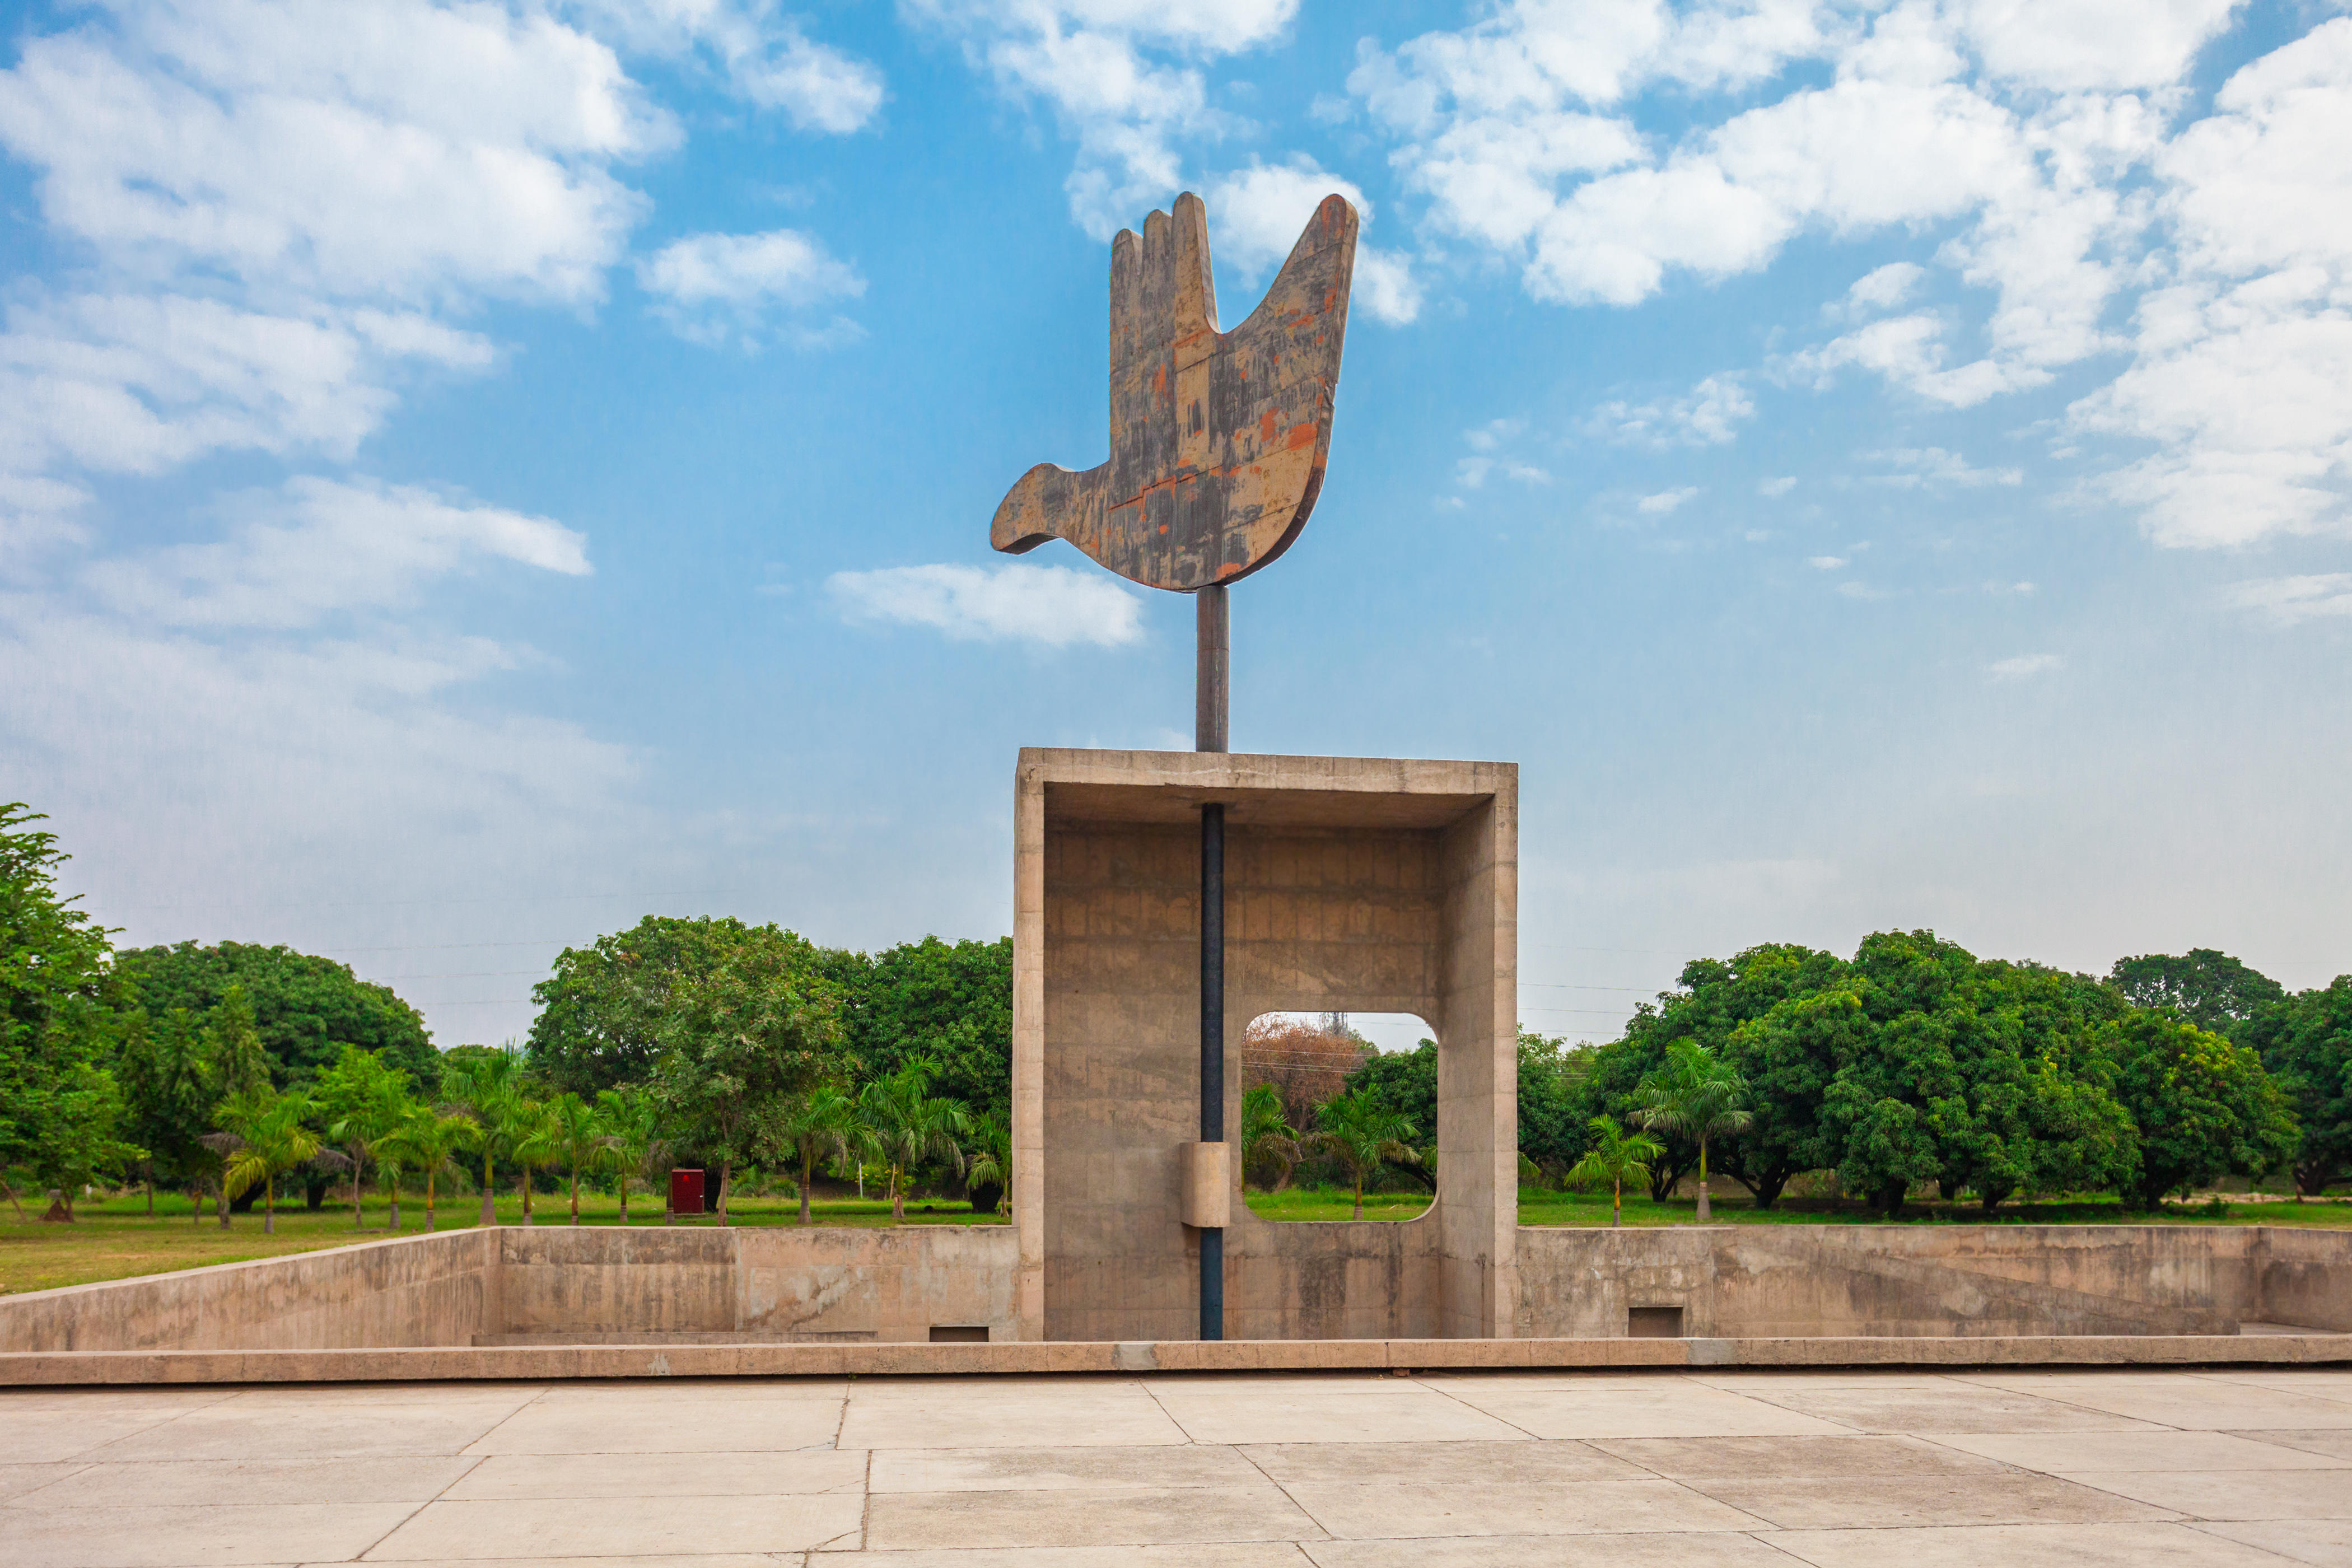 チャンディーガル連邦直轄領にあるモニュメント「開かれた手」のシンボリックな構造